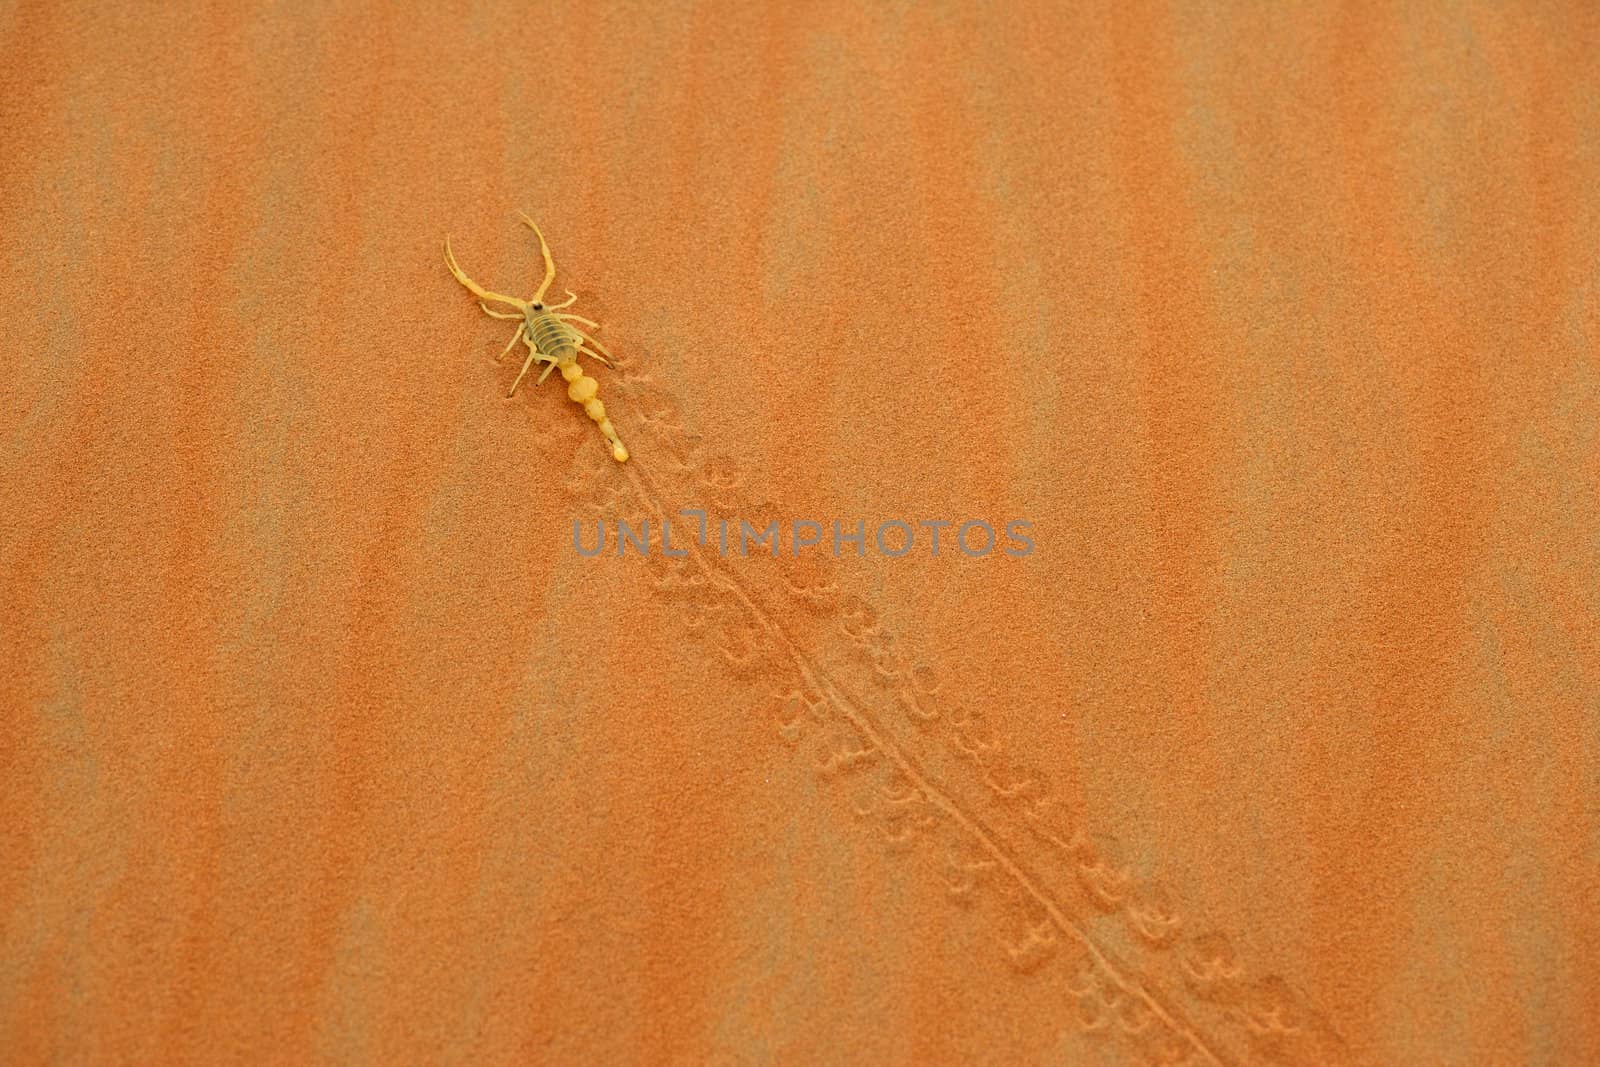 A highly venomous Arabian scorpion, Apistobuthus pterygocerus, leaving its tracks on a sand dune in the Empty Quarter Desert.